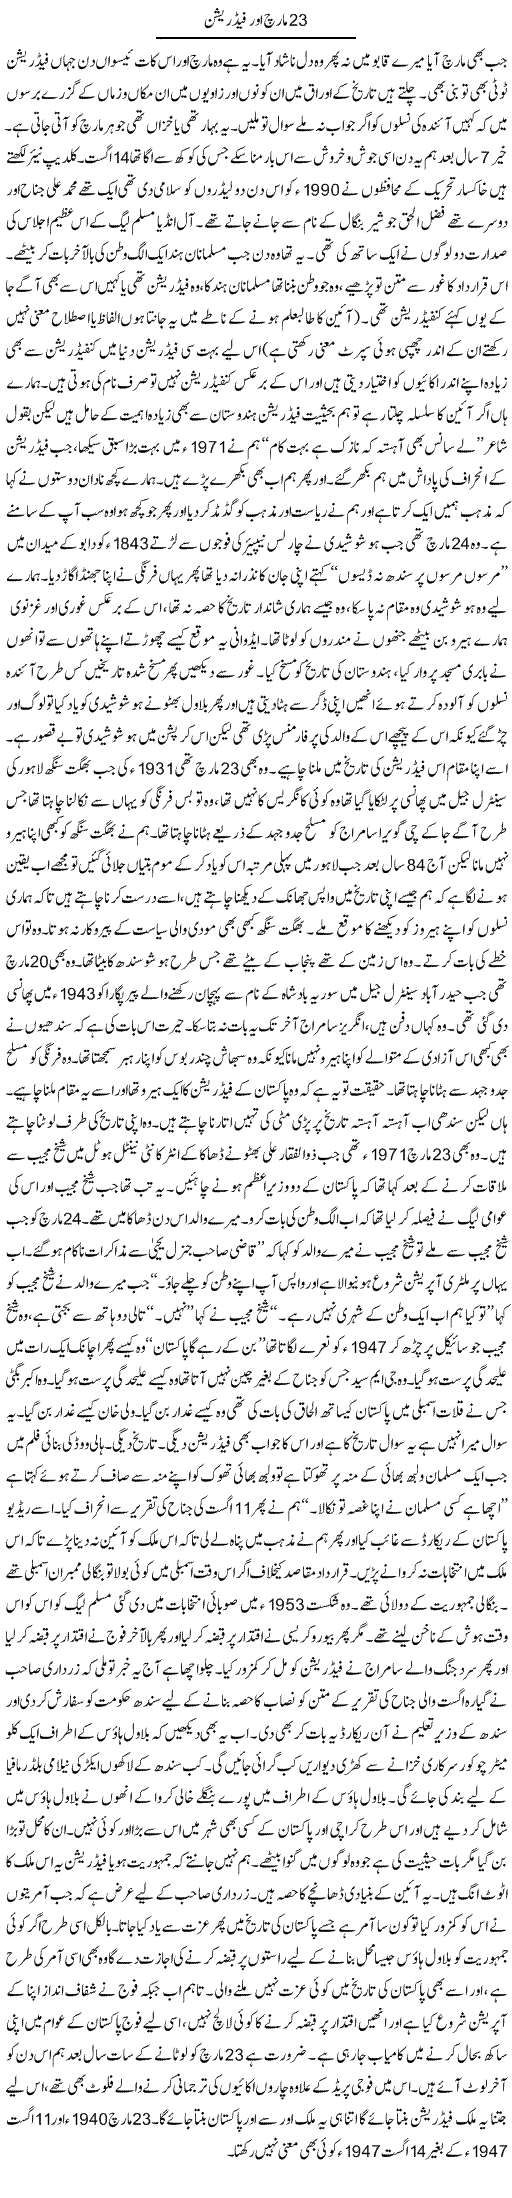 23 March Aur Federation | Javed Qazi | Daily Urdu Columns